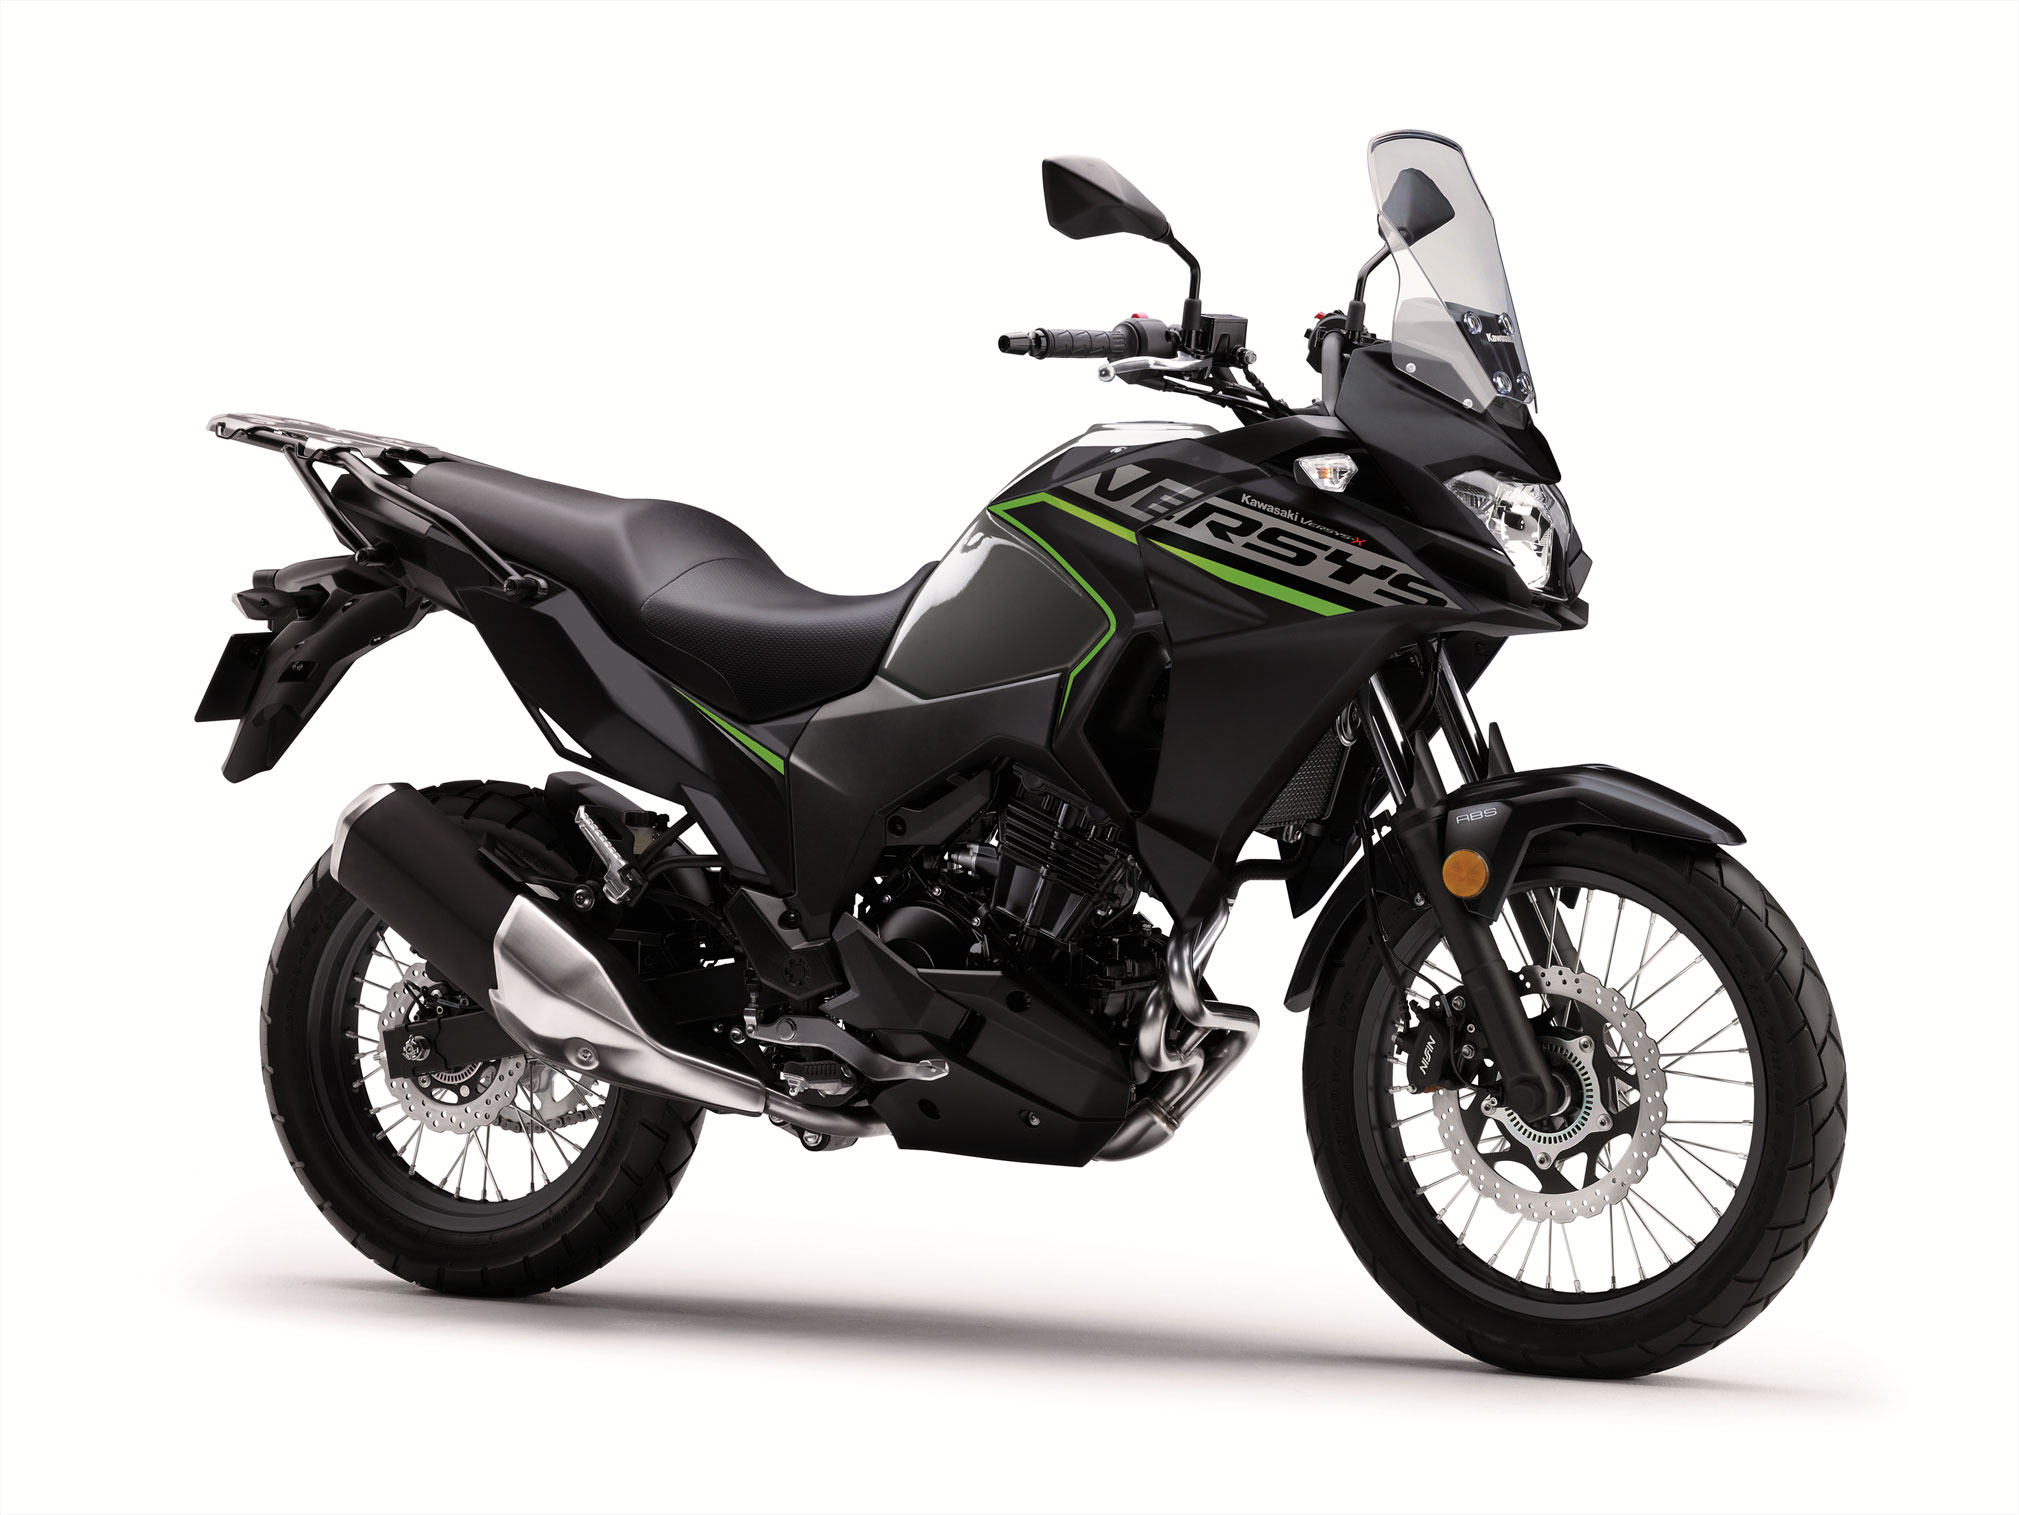 2019 Kawasaki Versys-X 300 Guide • Total Motorcycle